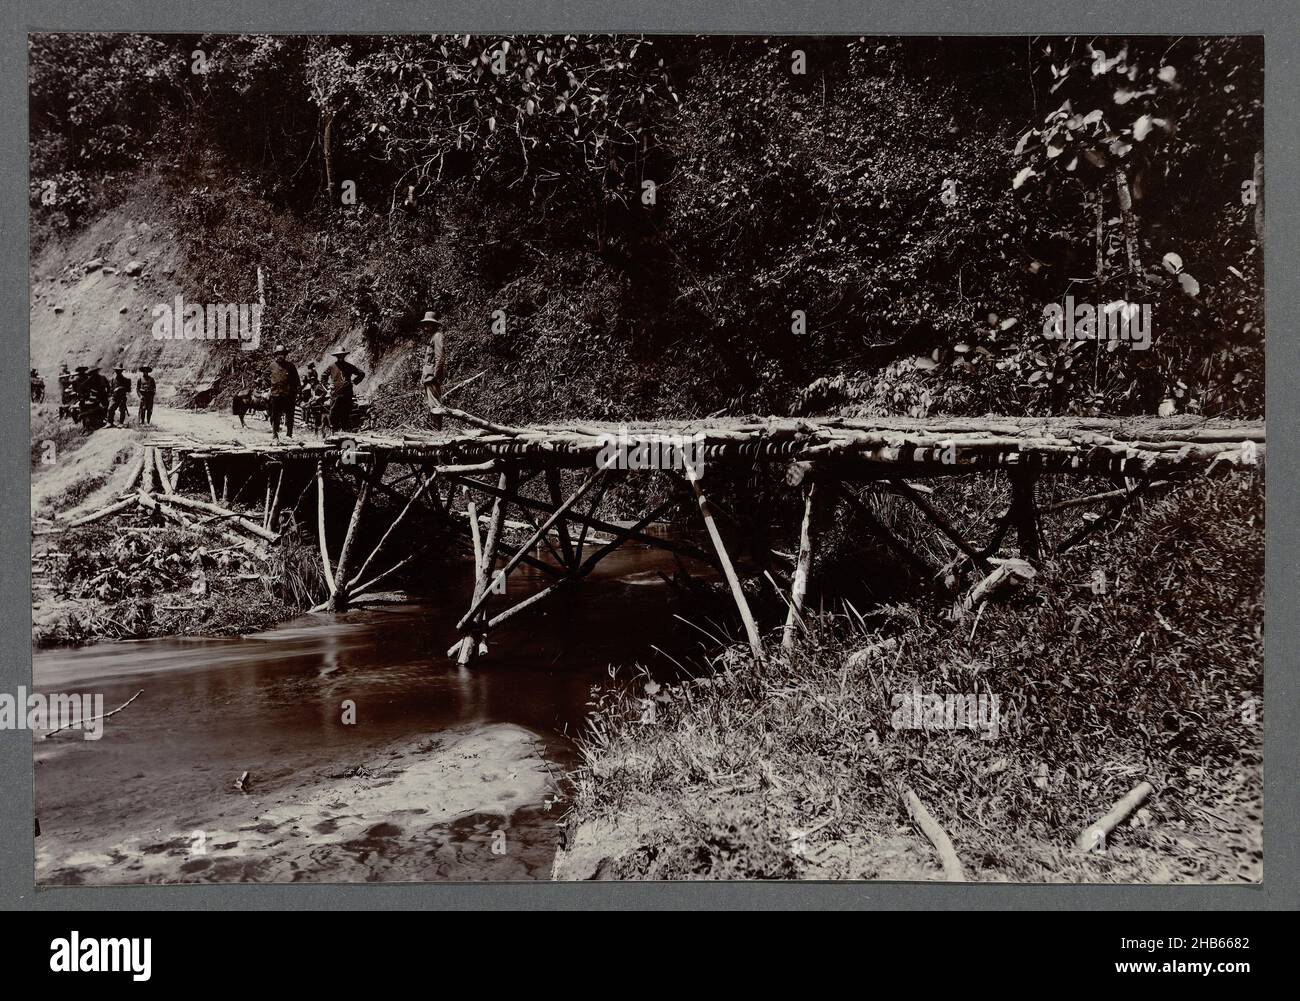 Vieux pont, un vieux pont de poteaux en bois au-dessus d'une petite rivière.Insérer photo dans un album de 87 photos sur la construction de la route Gajo sur Sumatra Nord entre Bireuen et Takinguen entre 1903 et 1914., anonyme, Noord-Sumatra, 1903 - 1913, support photographique,hauteur 138 mm × largeur 200 mm Banque D'Images